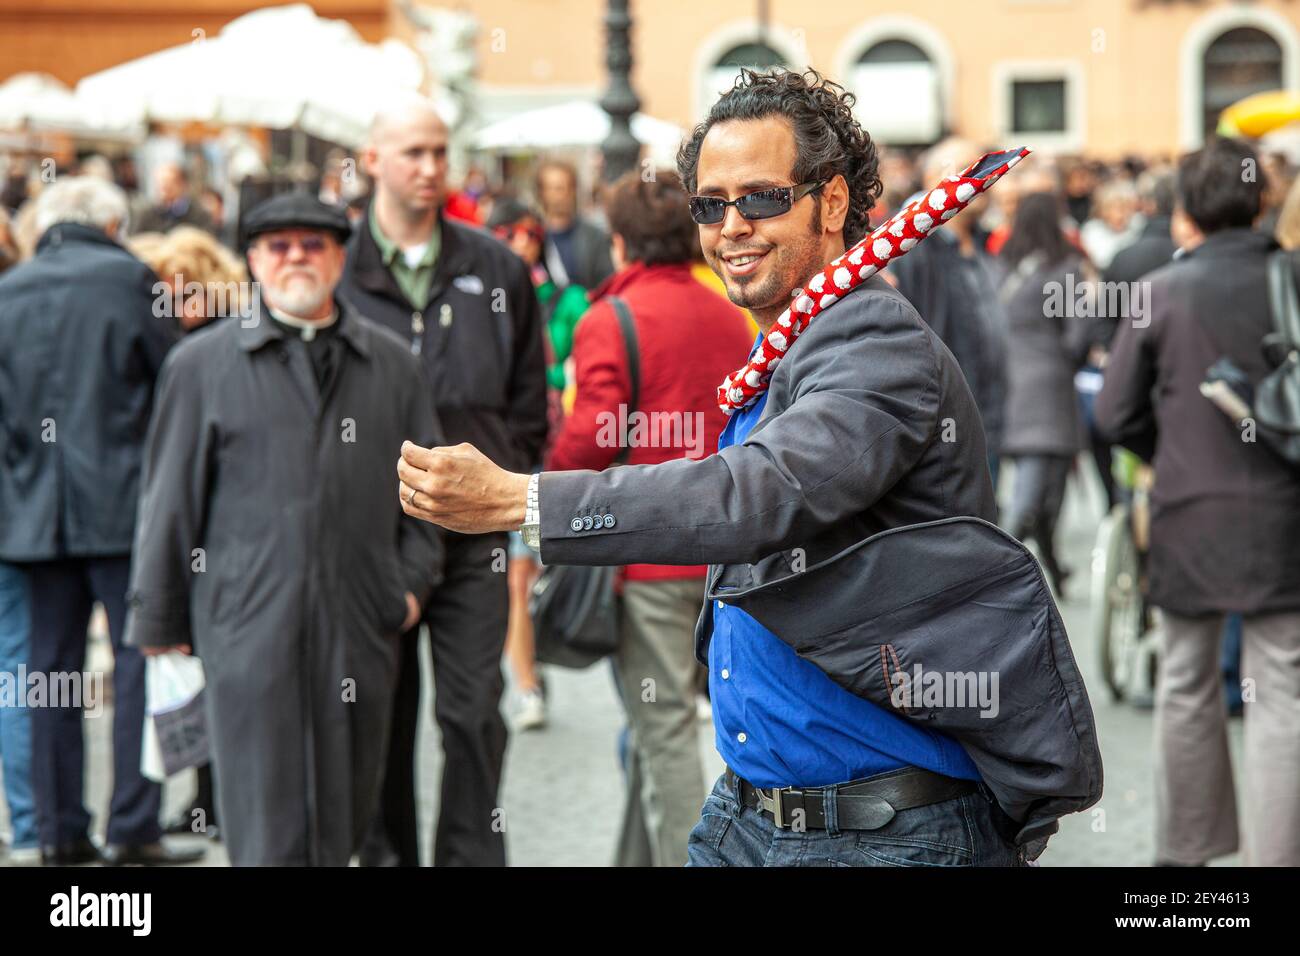 un artiste de rue, un mime, se produit sur la place entre les gens. Italie, Europe Banque D'Images